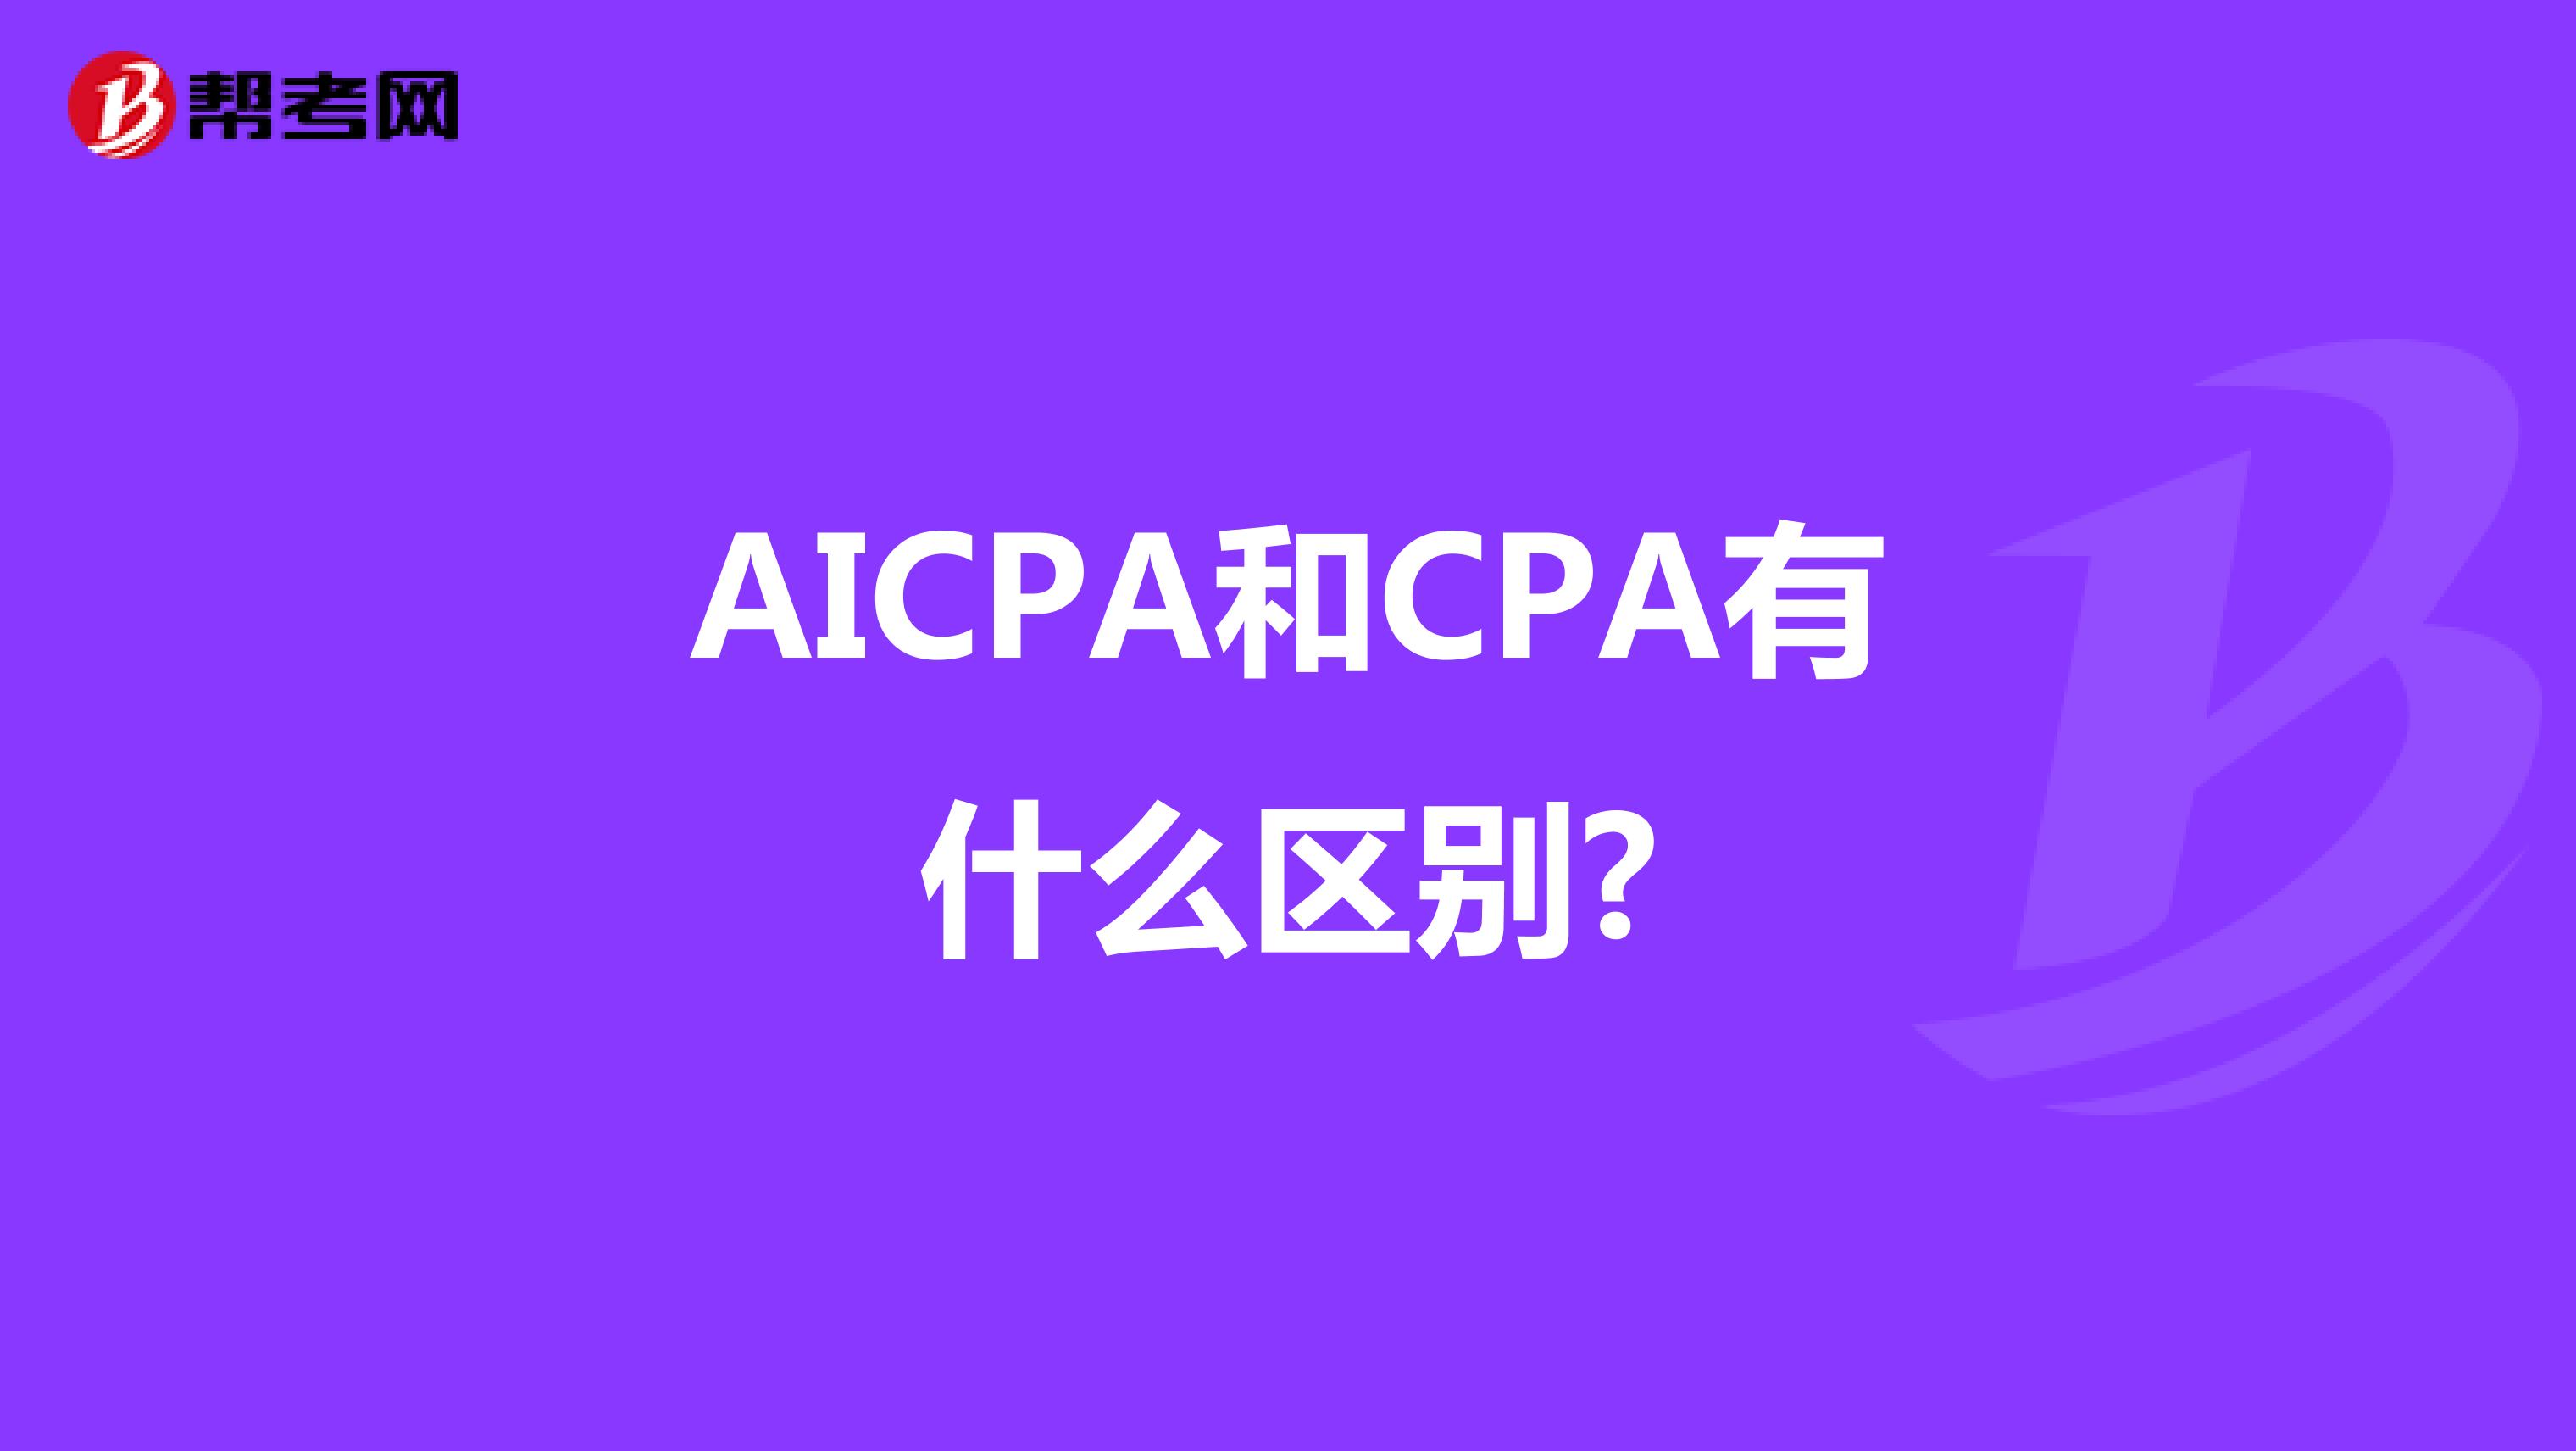 AICPA和CPA有什么区别?